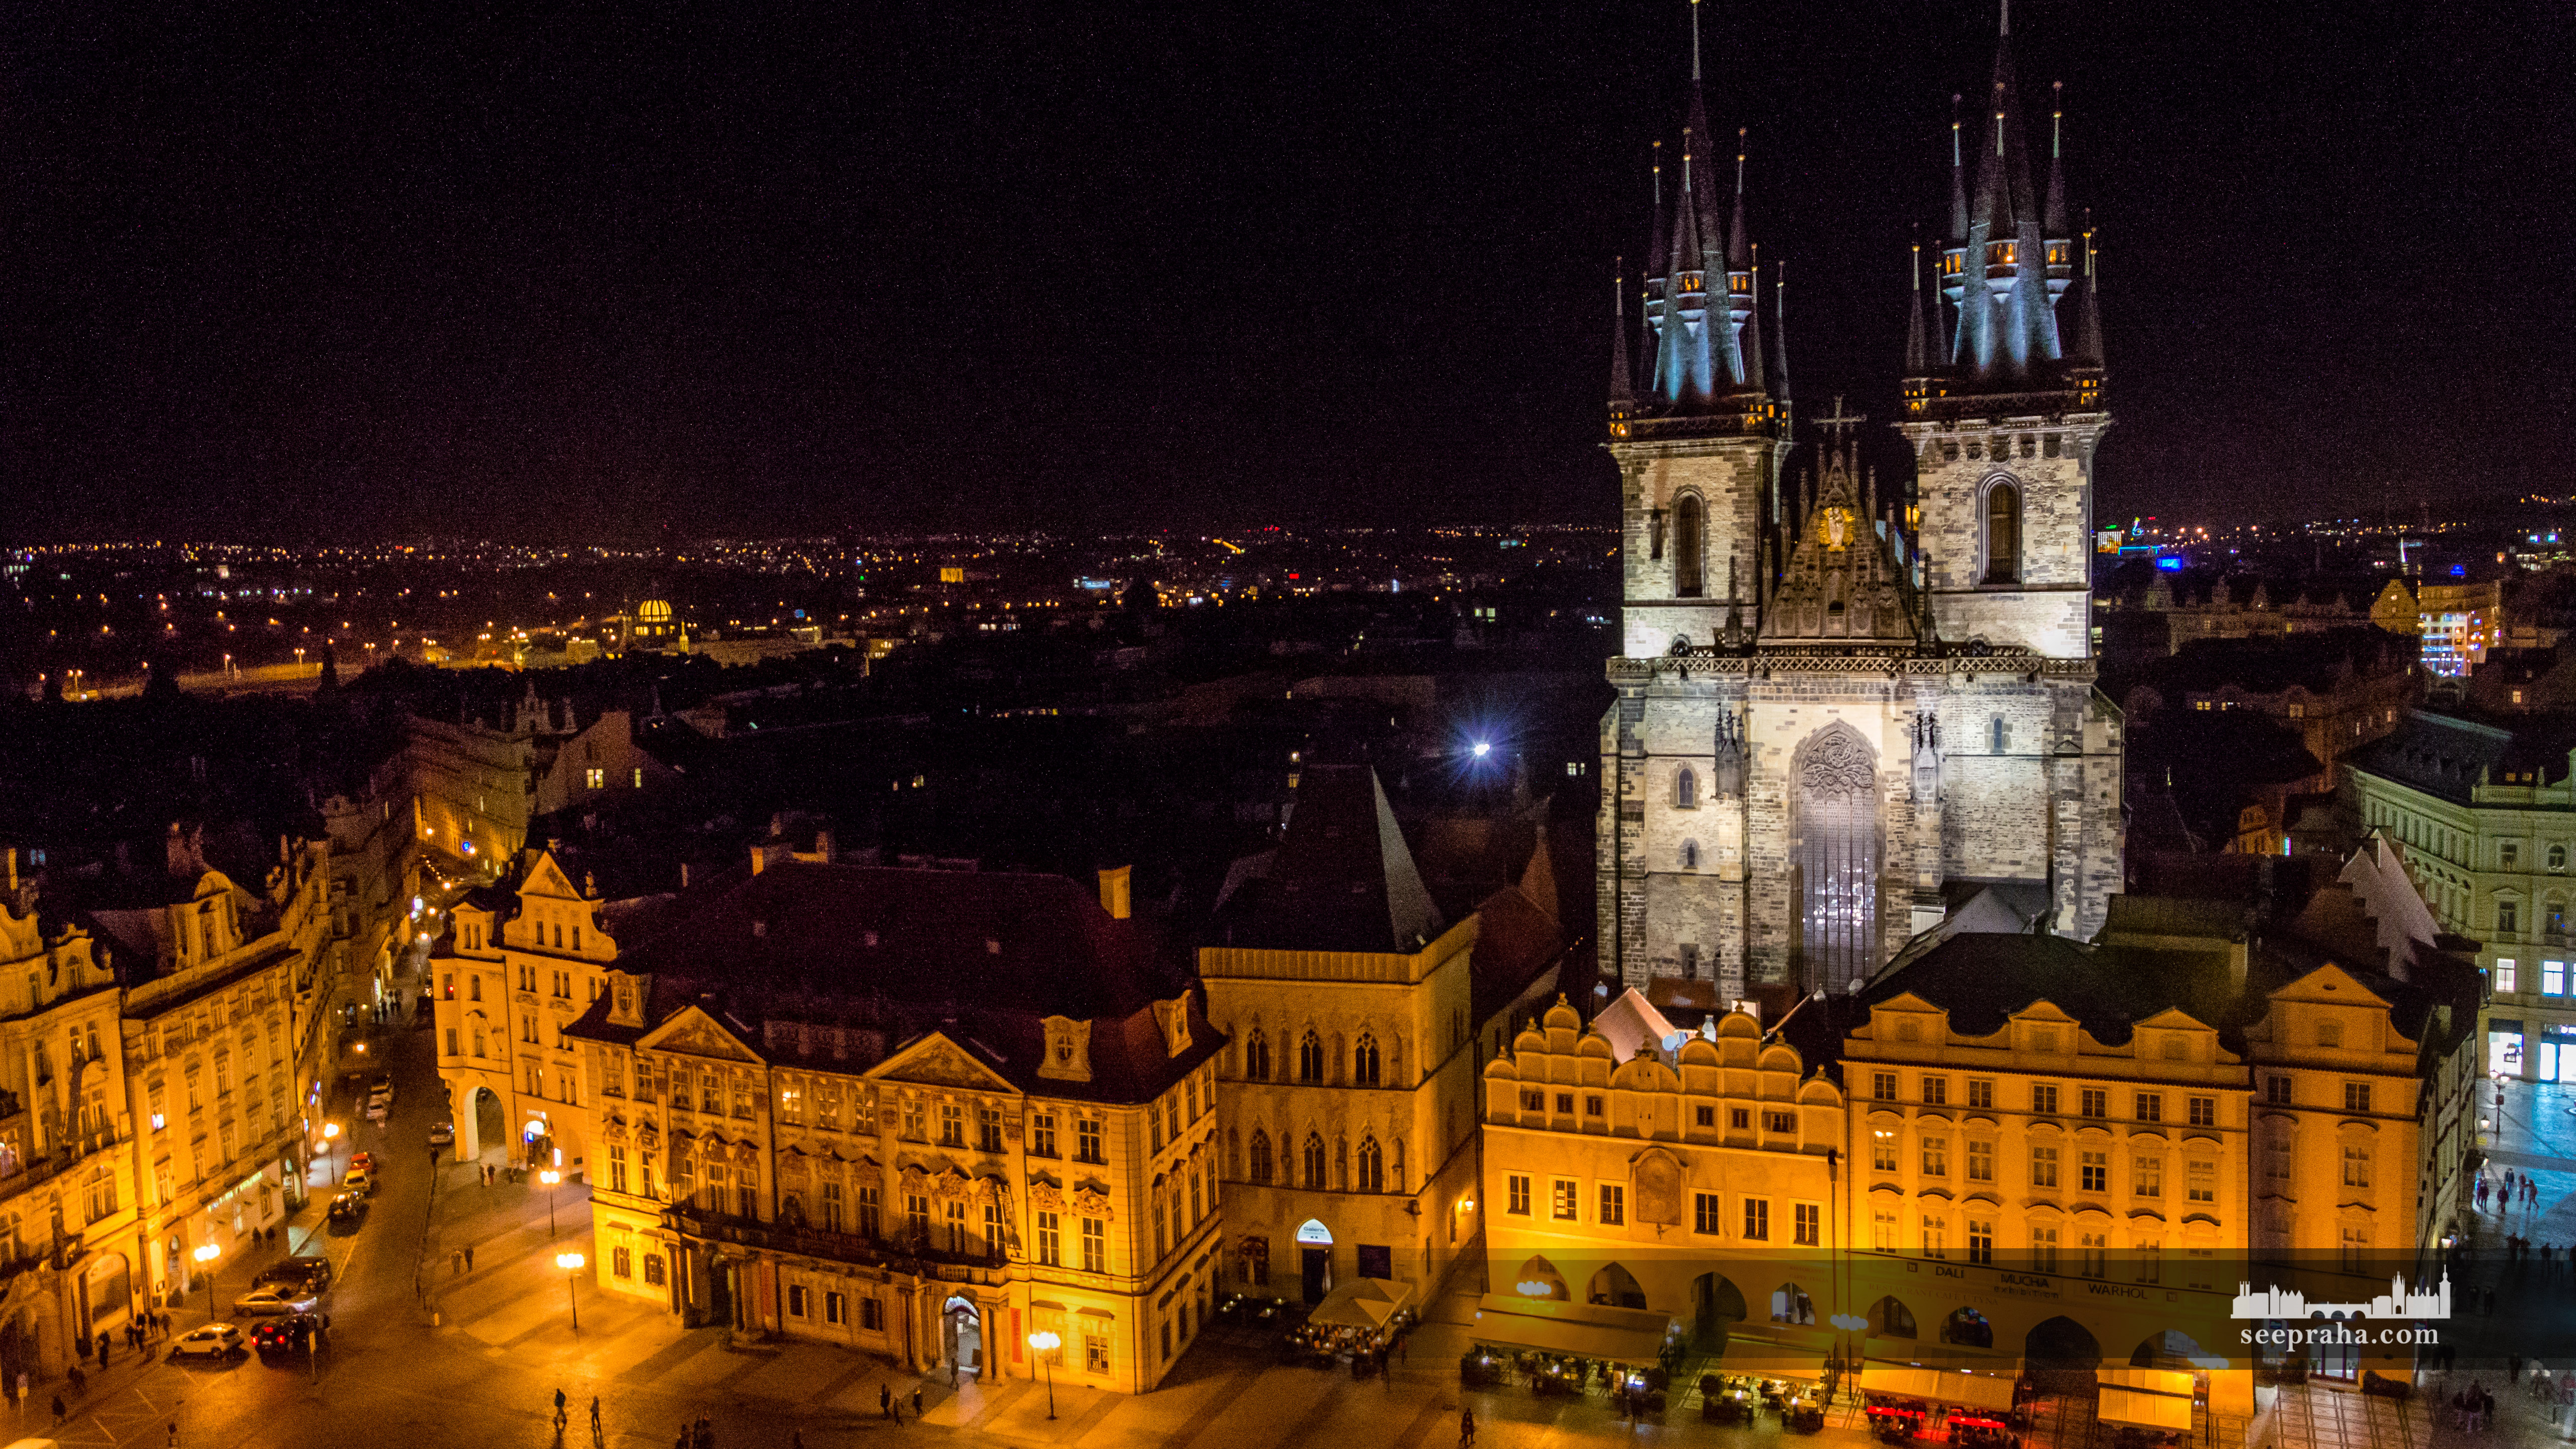 Kościół Najświętszej Marii Panny przed Tynem, Praga, Czechy